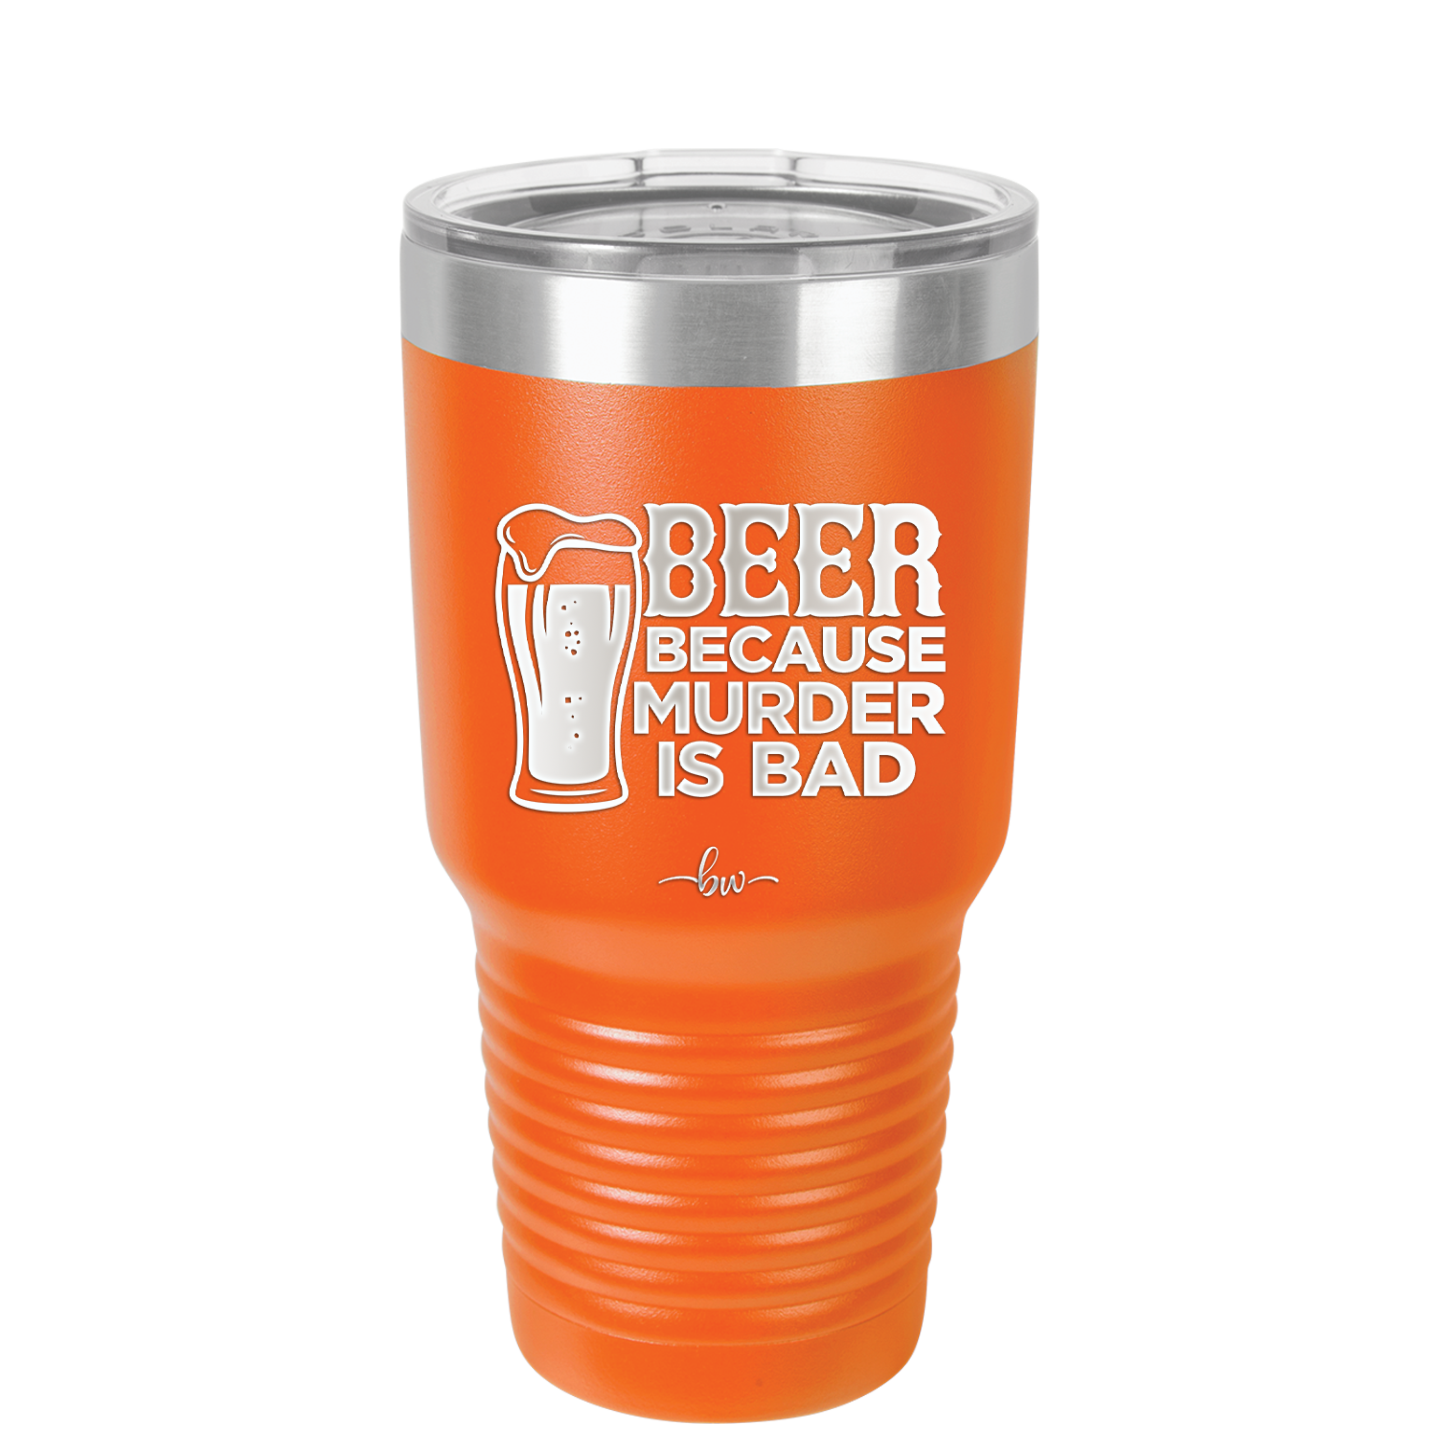 Beer Because Murder is Bad - Laser Engraved Stainless Steel Drinkware - 2435 -